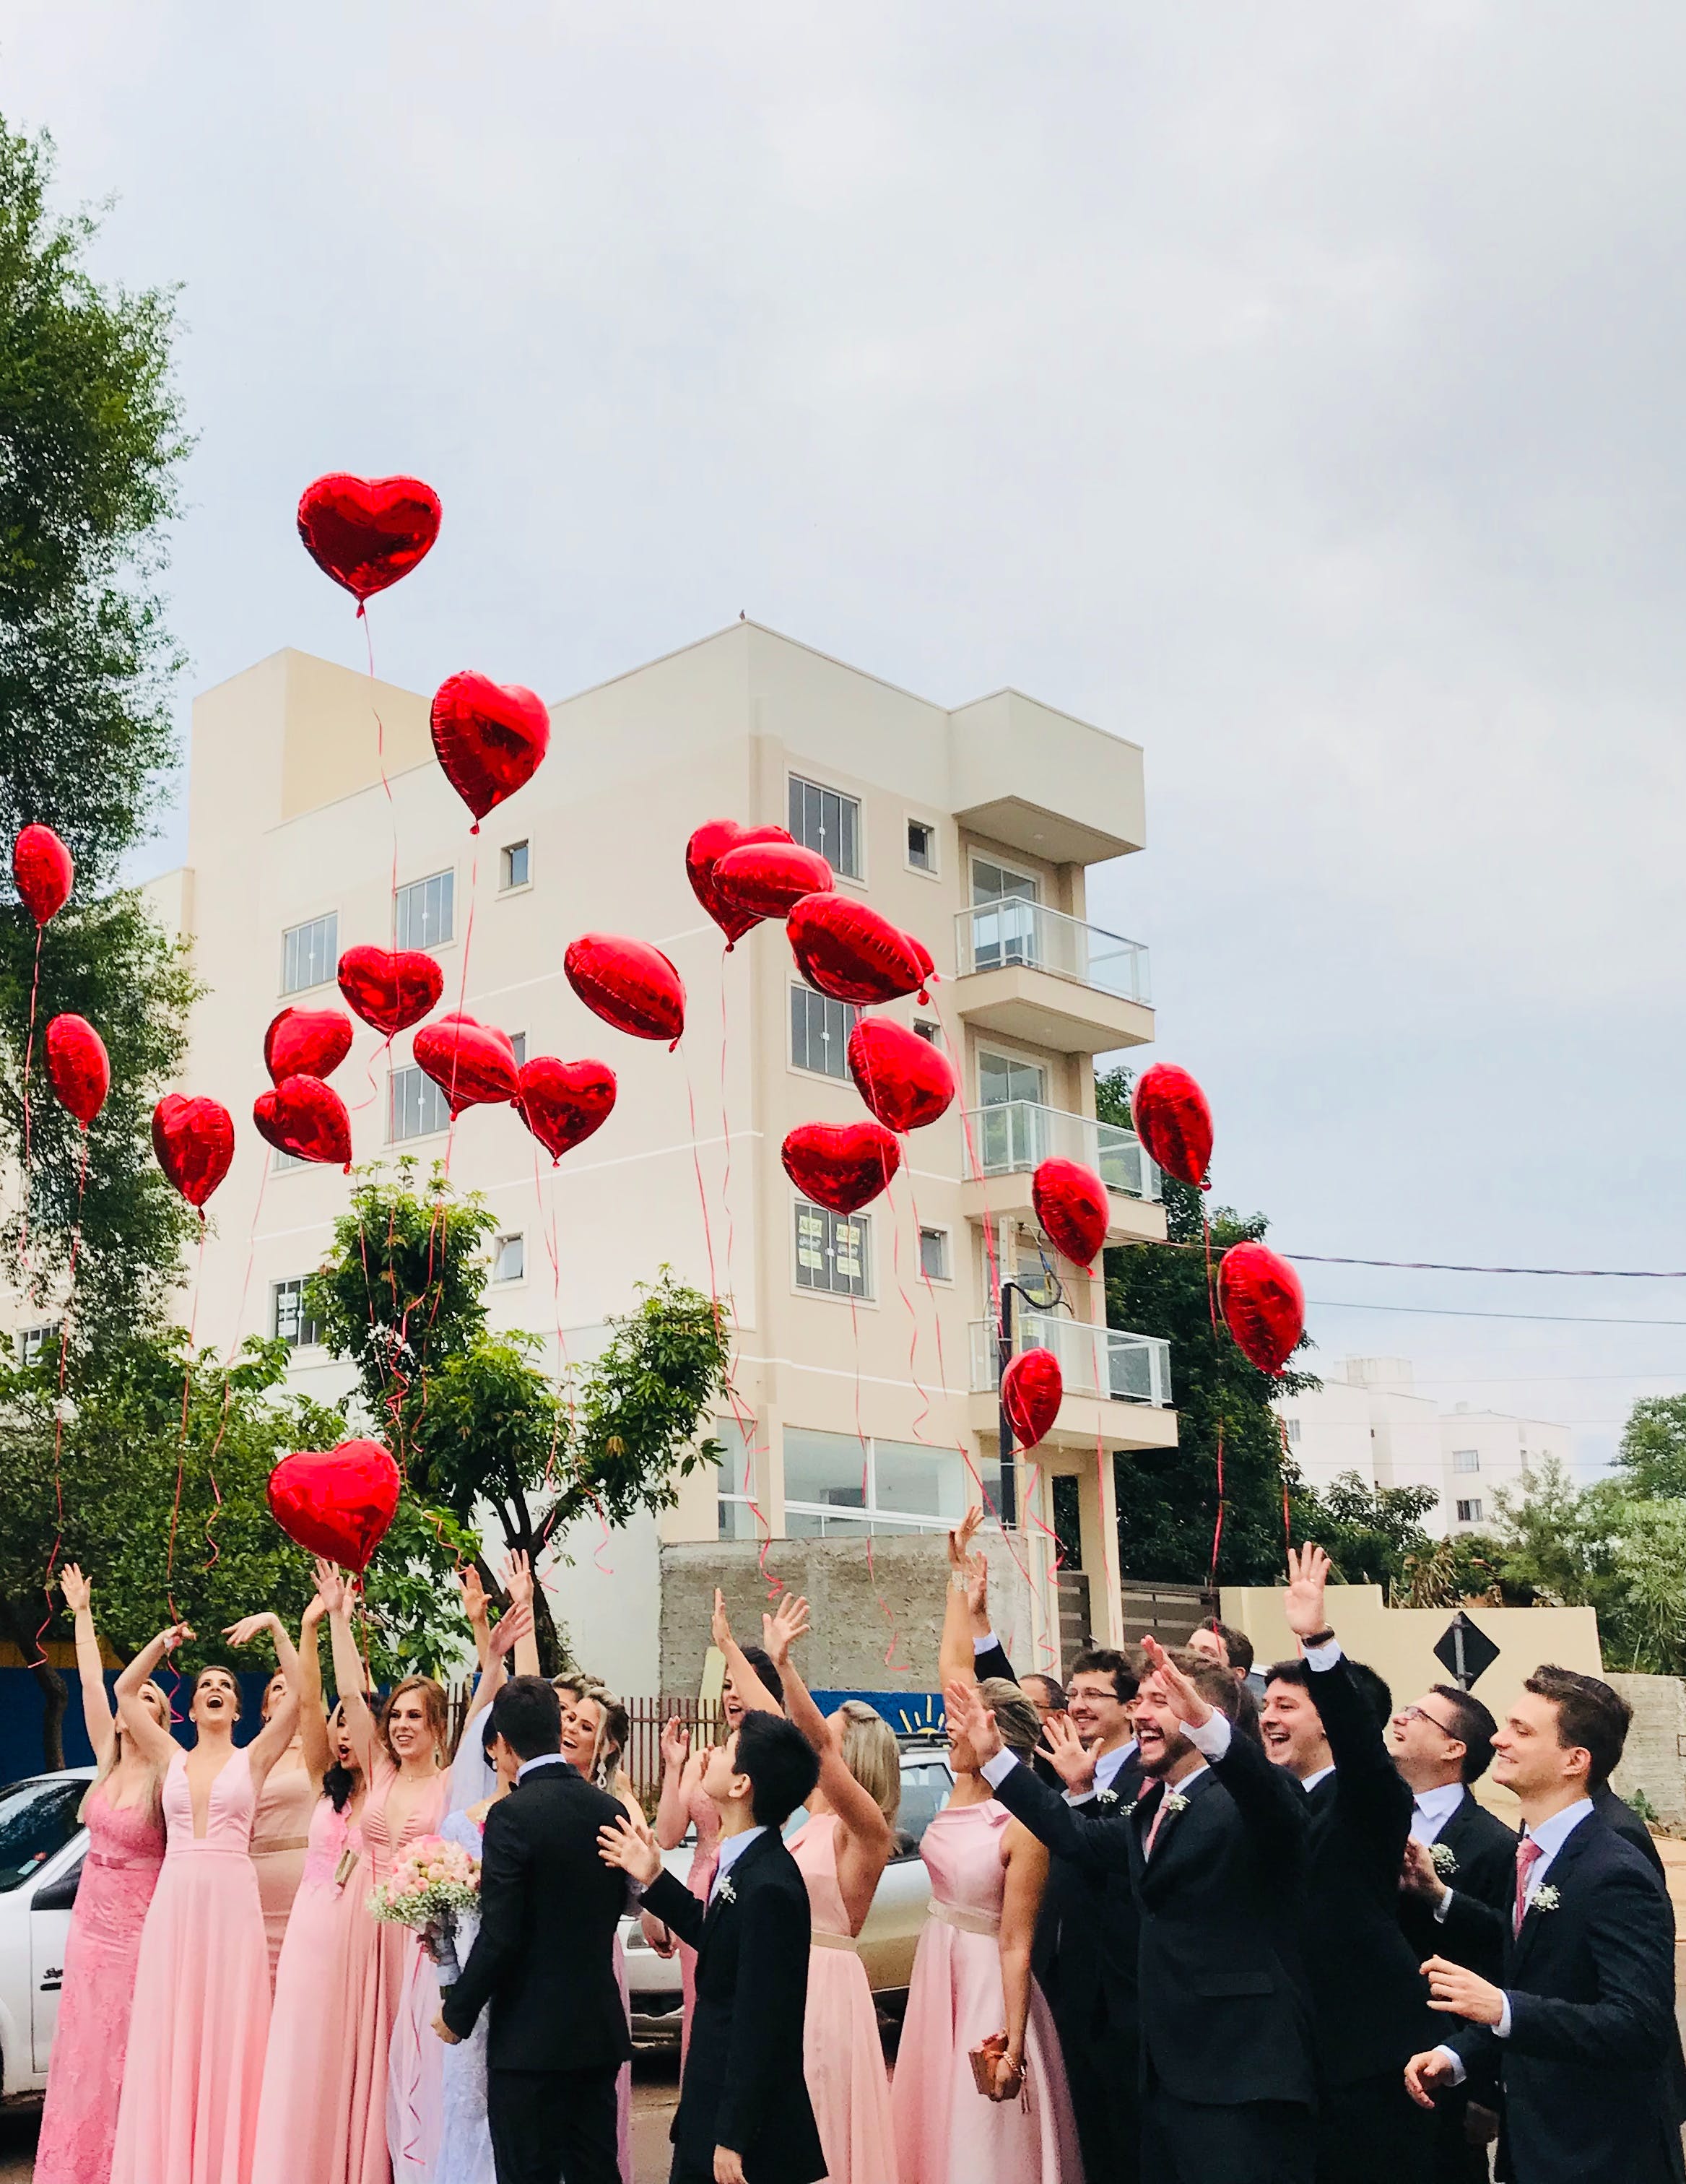 Eine Hochzeitsgesellschaft lässt herzförmige Luftballons auf der Straße steigen | Quelle: Pexels